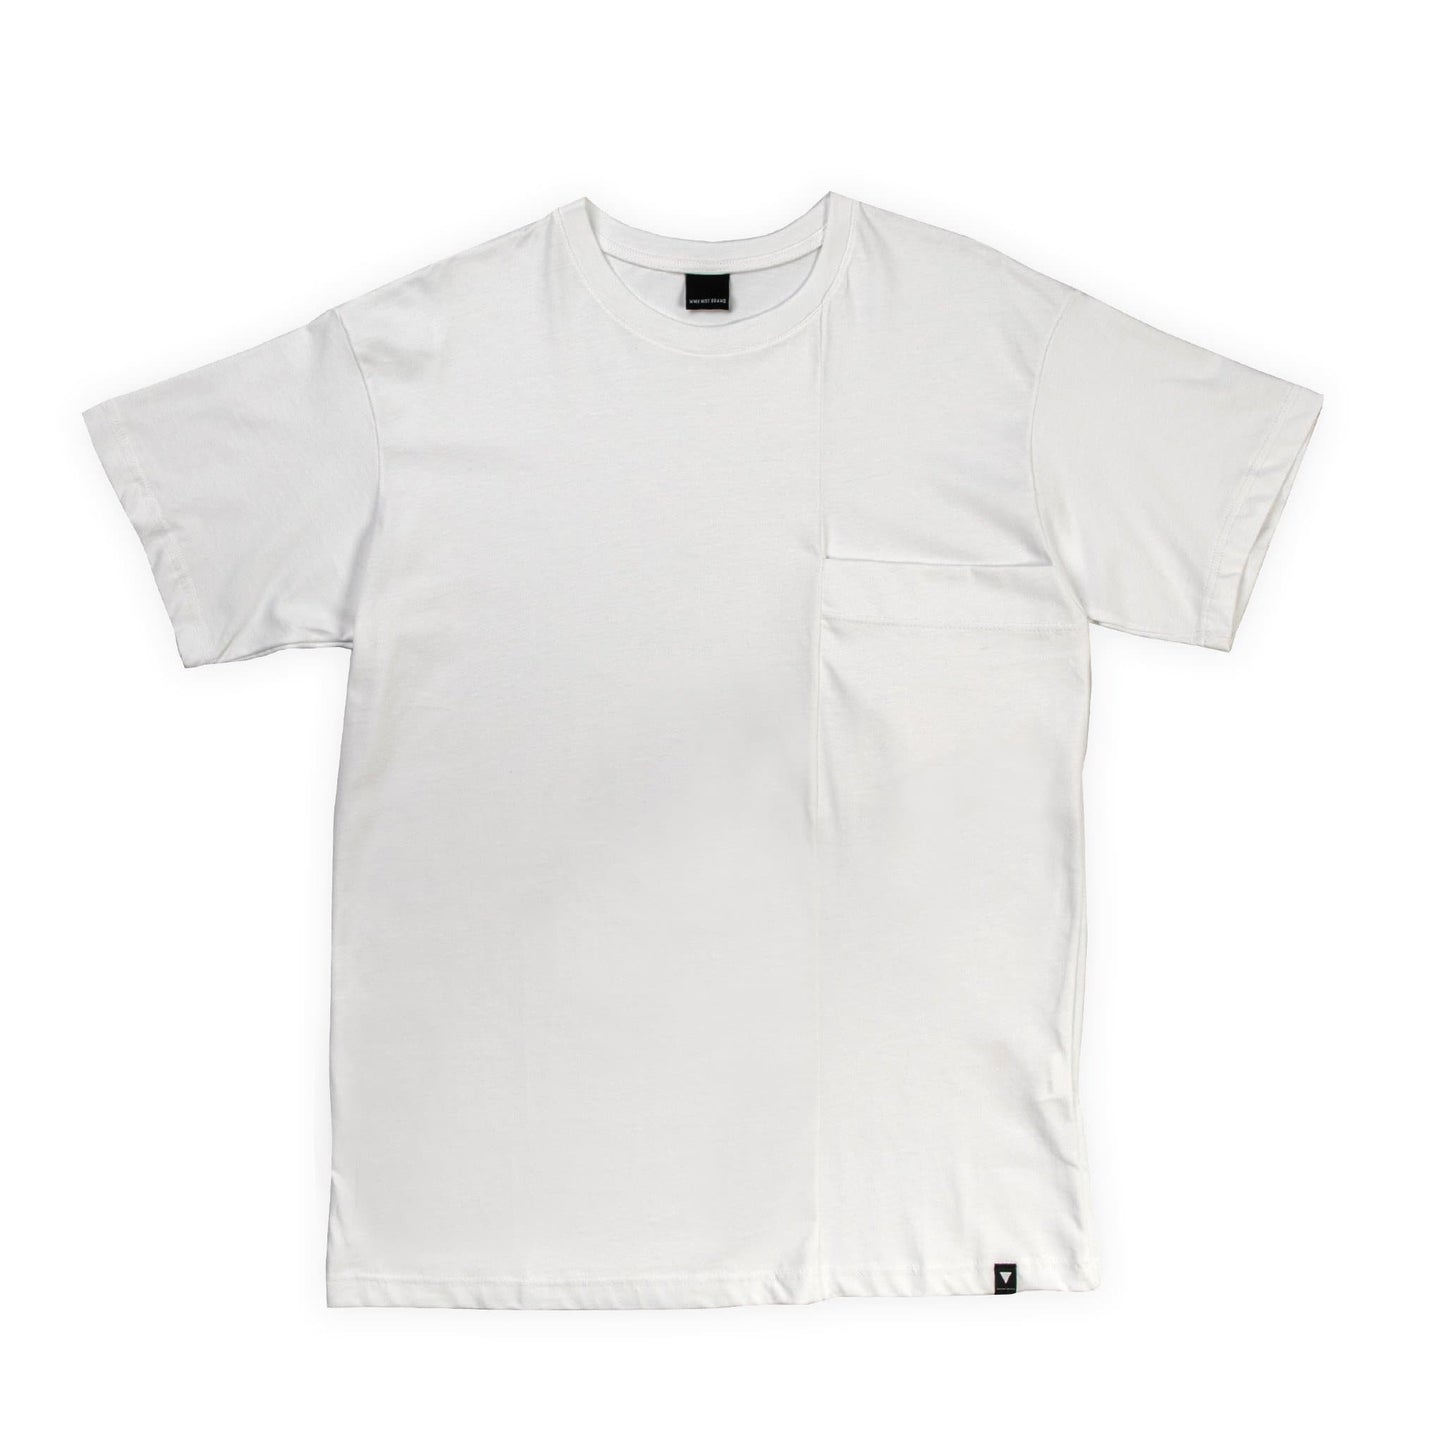 Ανδρικο κοντομανικο T-Shirt με τσεπη στο στηθος TEE.22 - Shirt Lab store